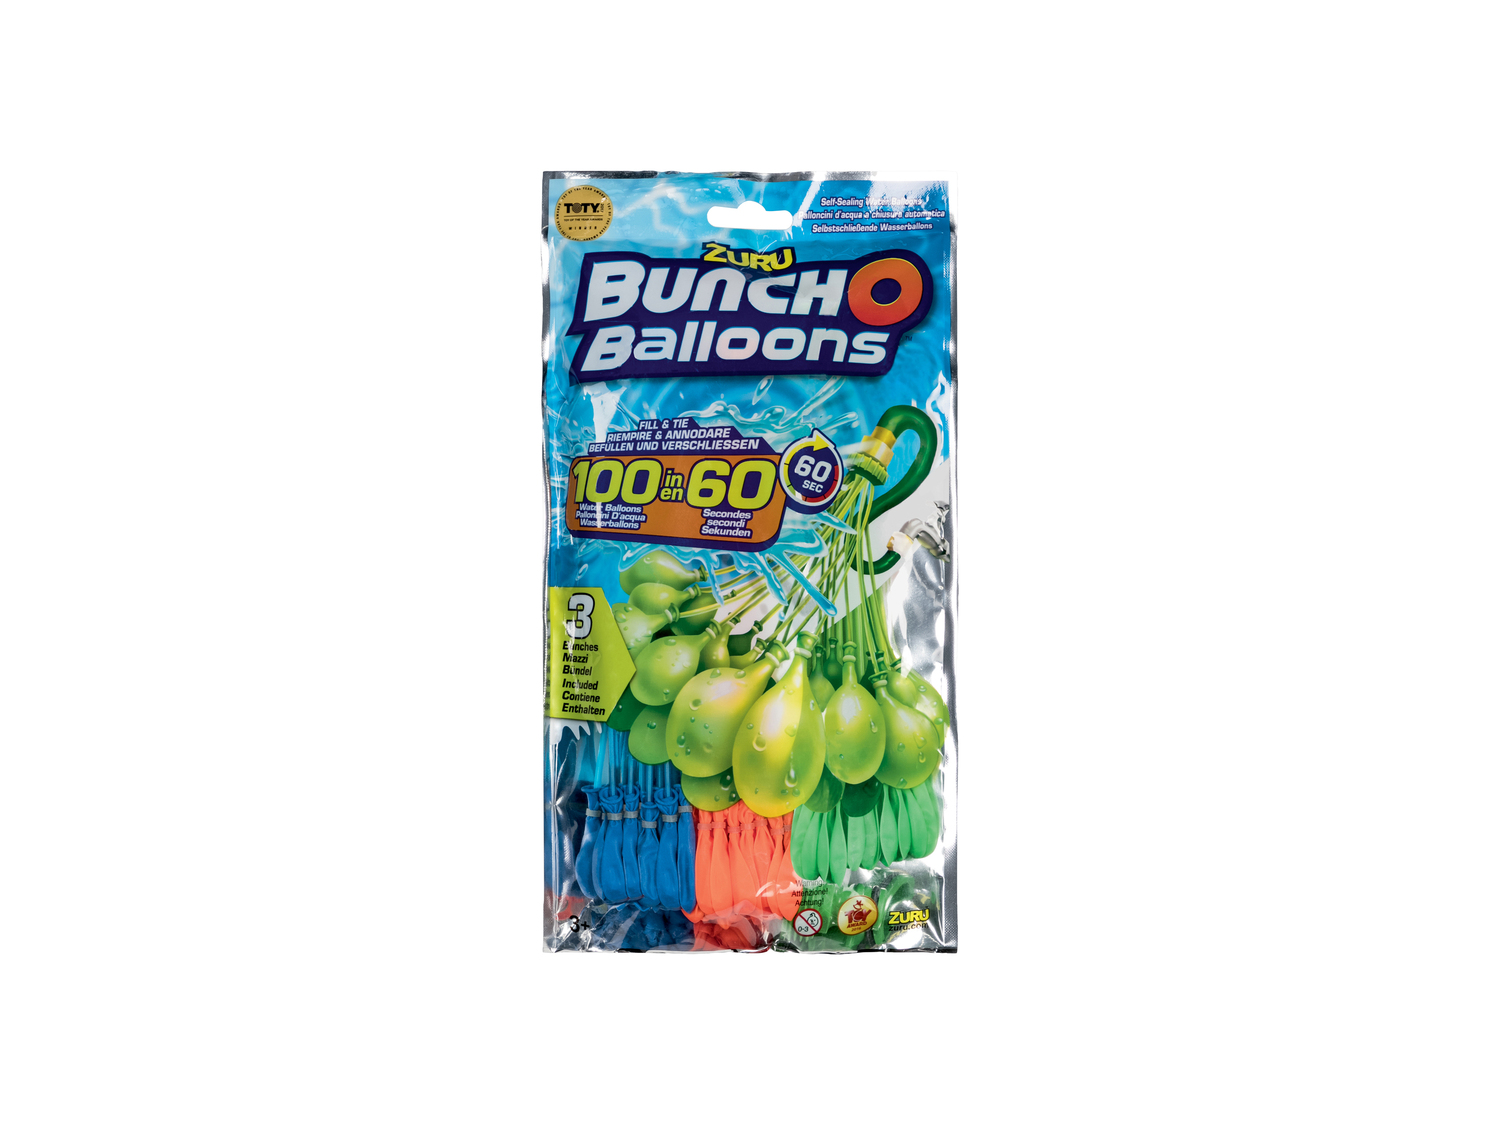 Set per gavettoni Zuru-buncho-baloons, prezzo 6.99 €  

Caratteristiche